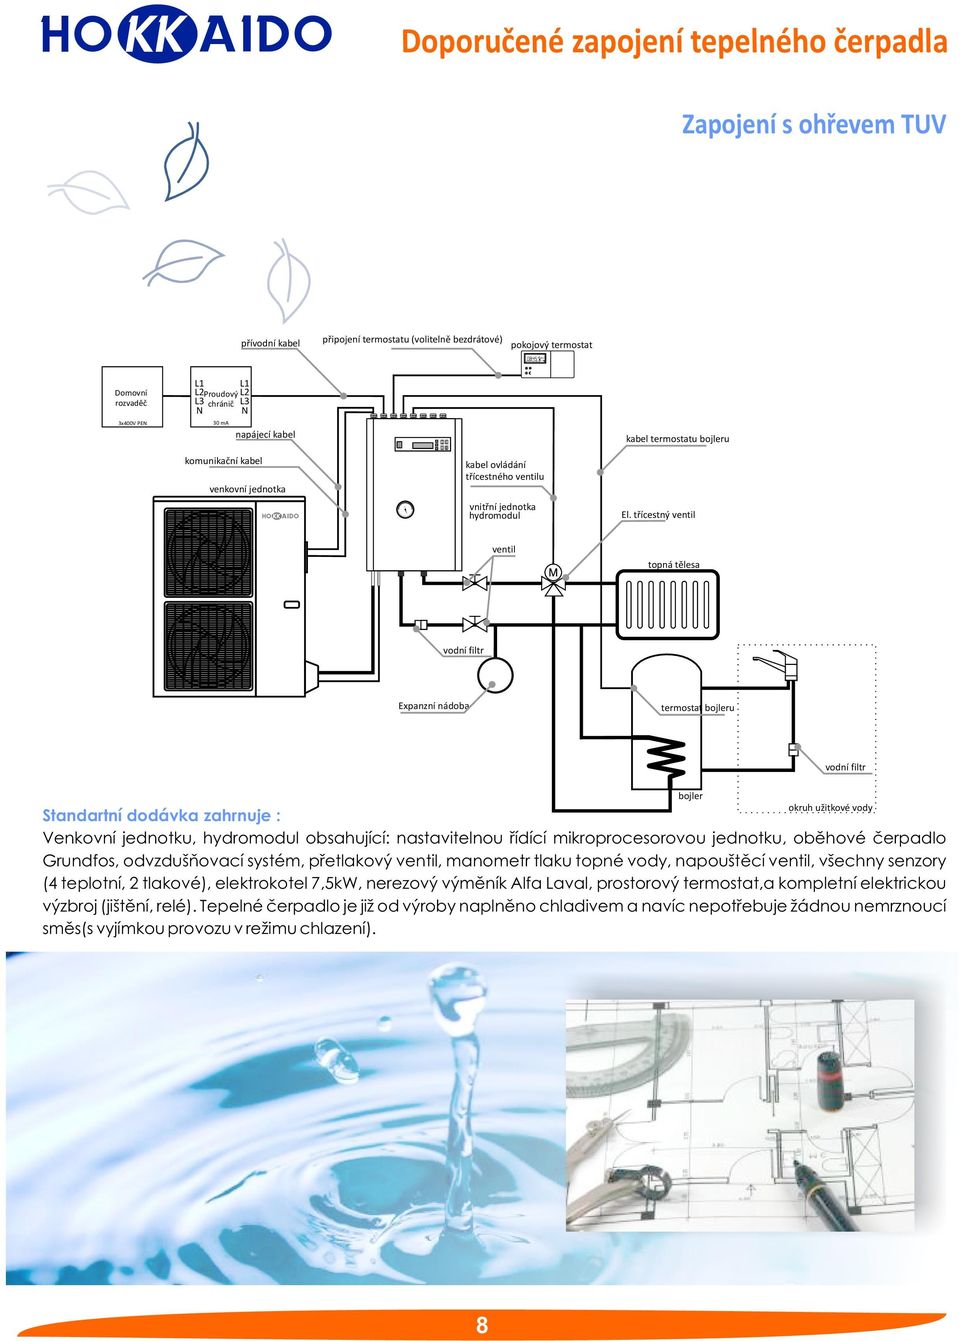 třícestný ventil ventil topná tělesa Expanzní nádoba termostat bojleru Standartní dodávka zahrnuje : Venkovní jednotku, hydromodul obsahující: nastavitelnou řídící mikroprocesorovou jednotku, oběhové